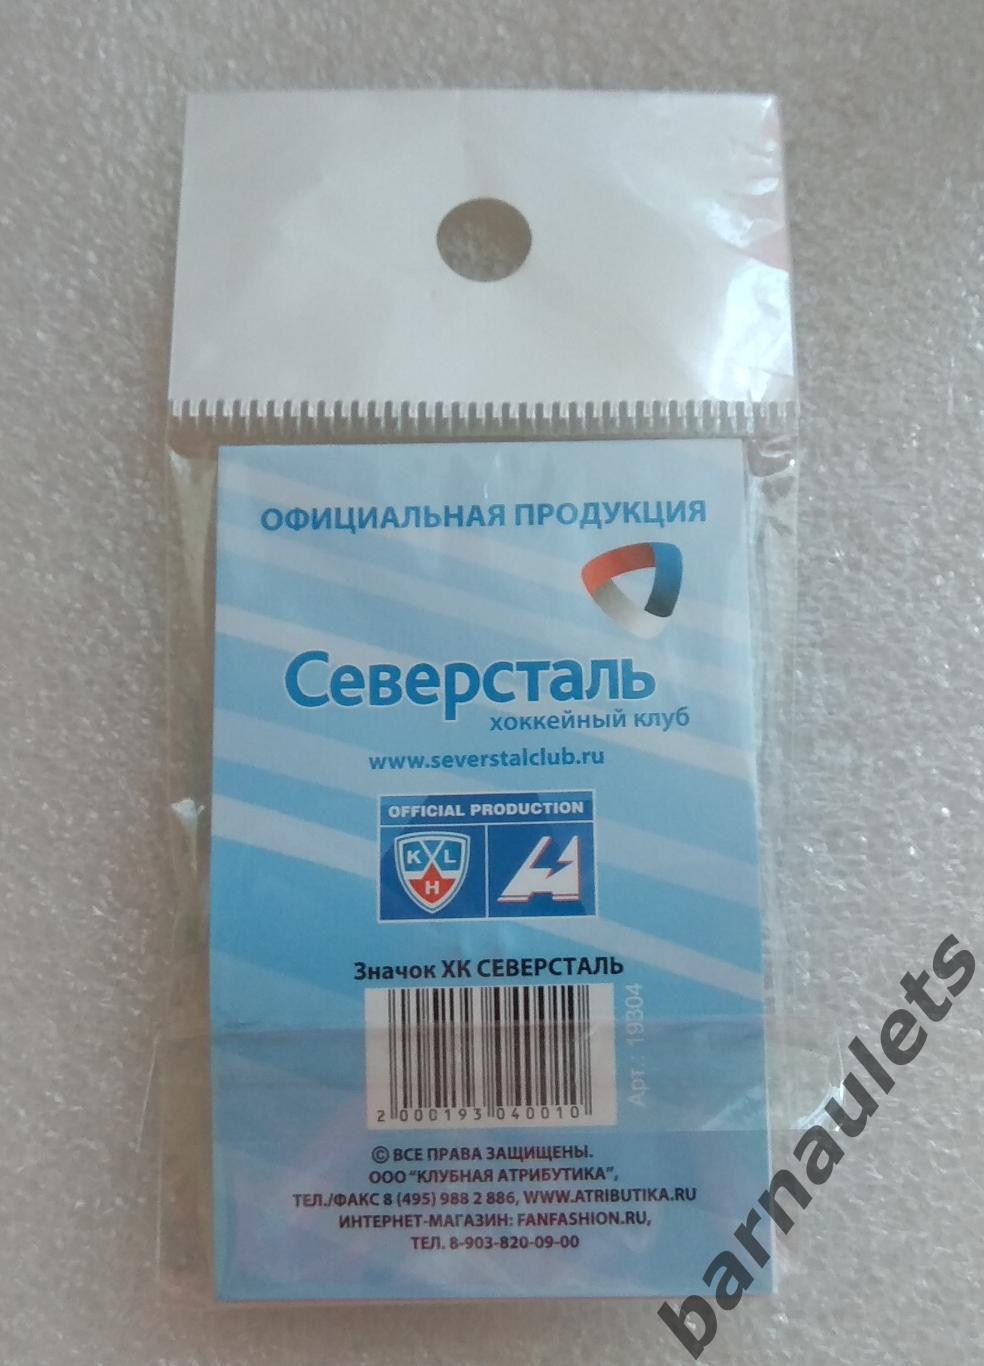 ХК СЕВЕРСТАЛЬ Череповец- official product 2011/12 год 3